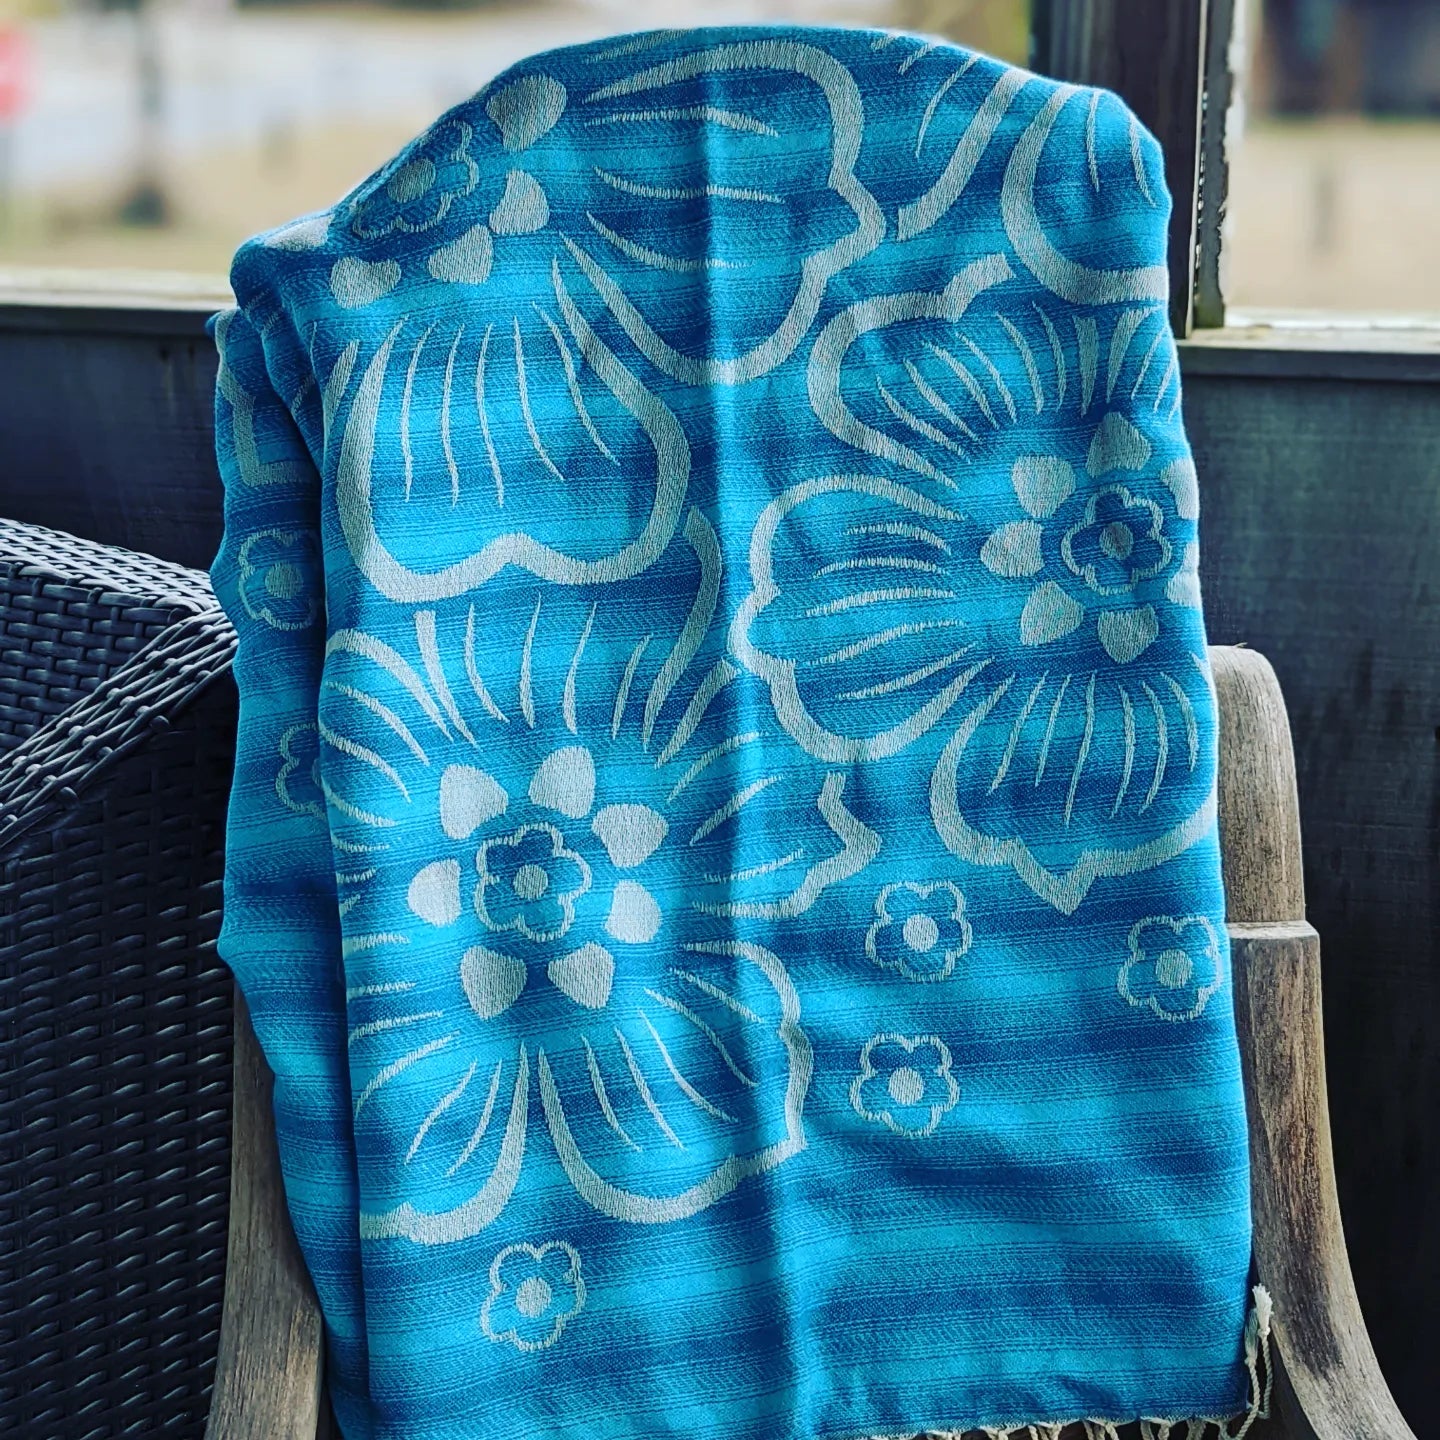 Soft, unique Turkish Towels